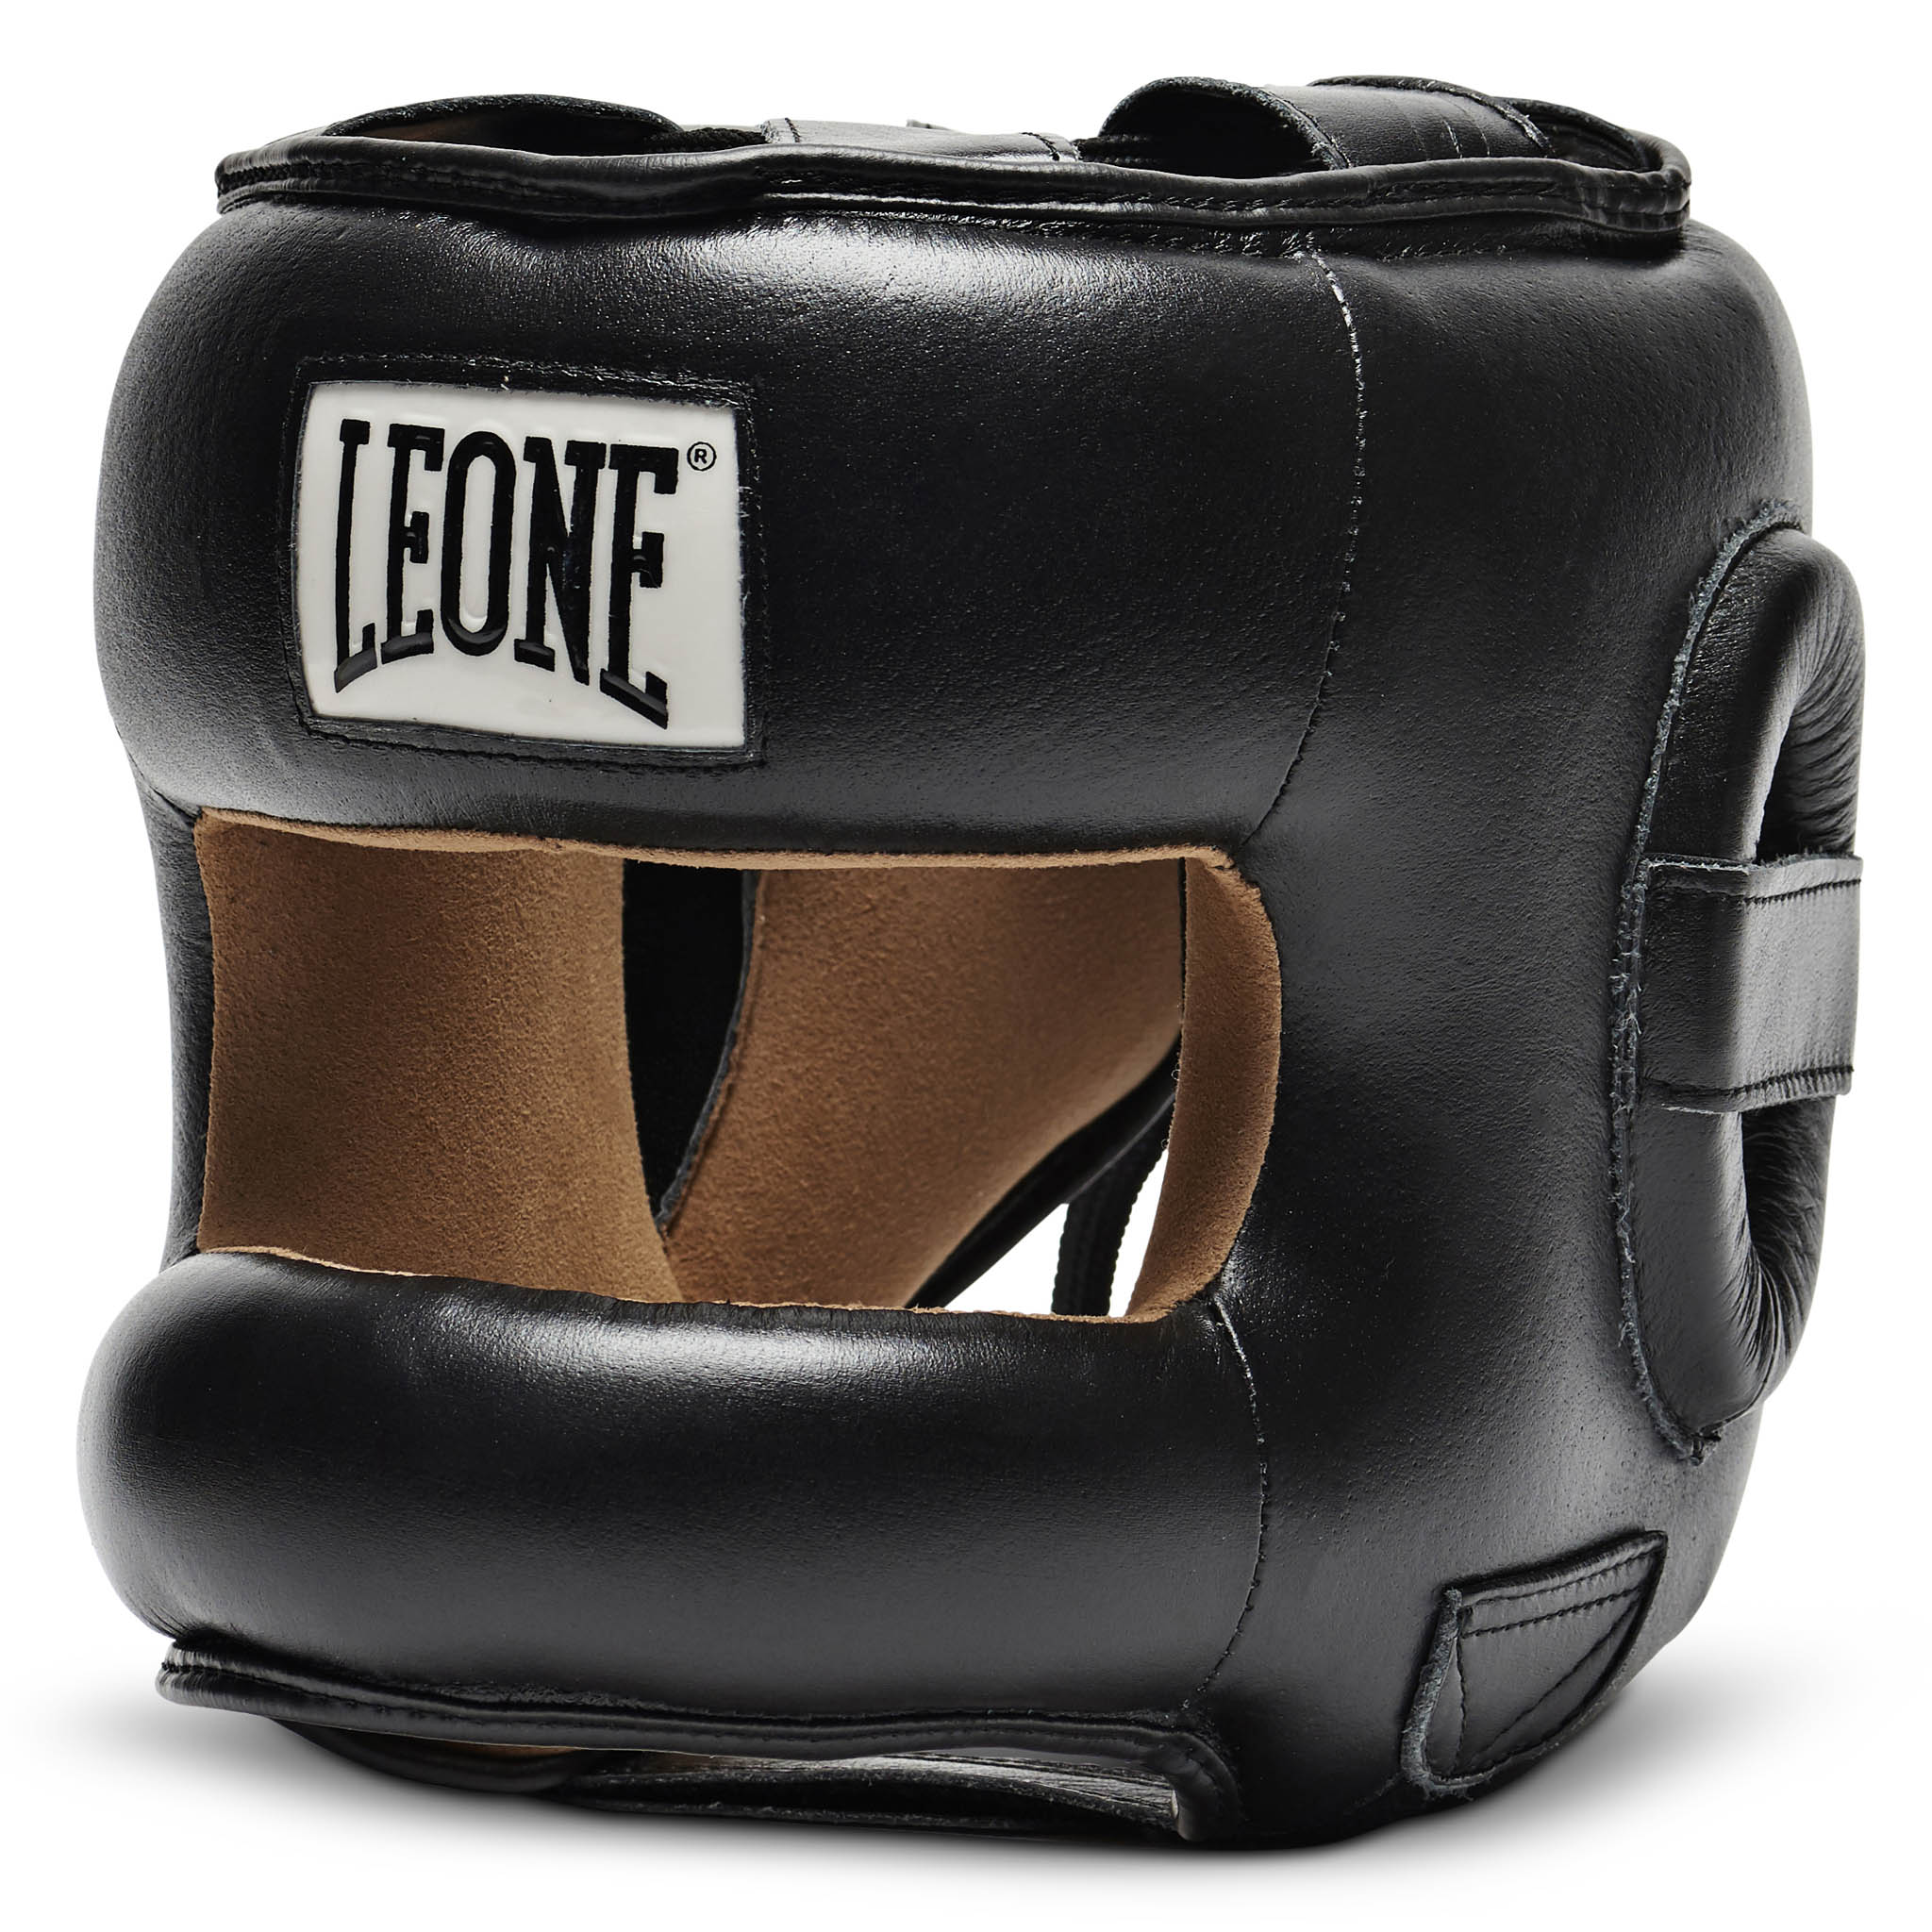 CS425 Casco de Boxeo Leone 1947 con barra frontal Protection